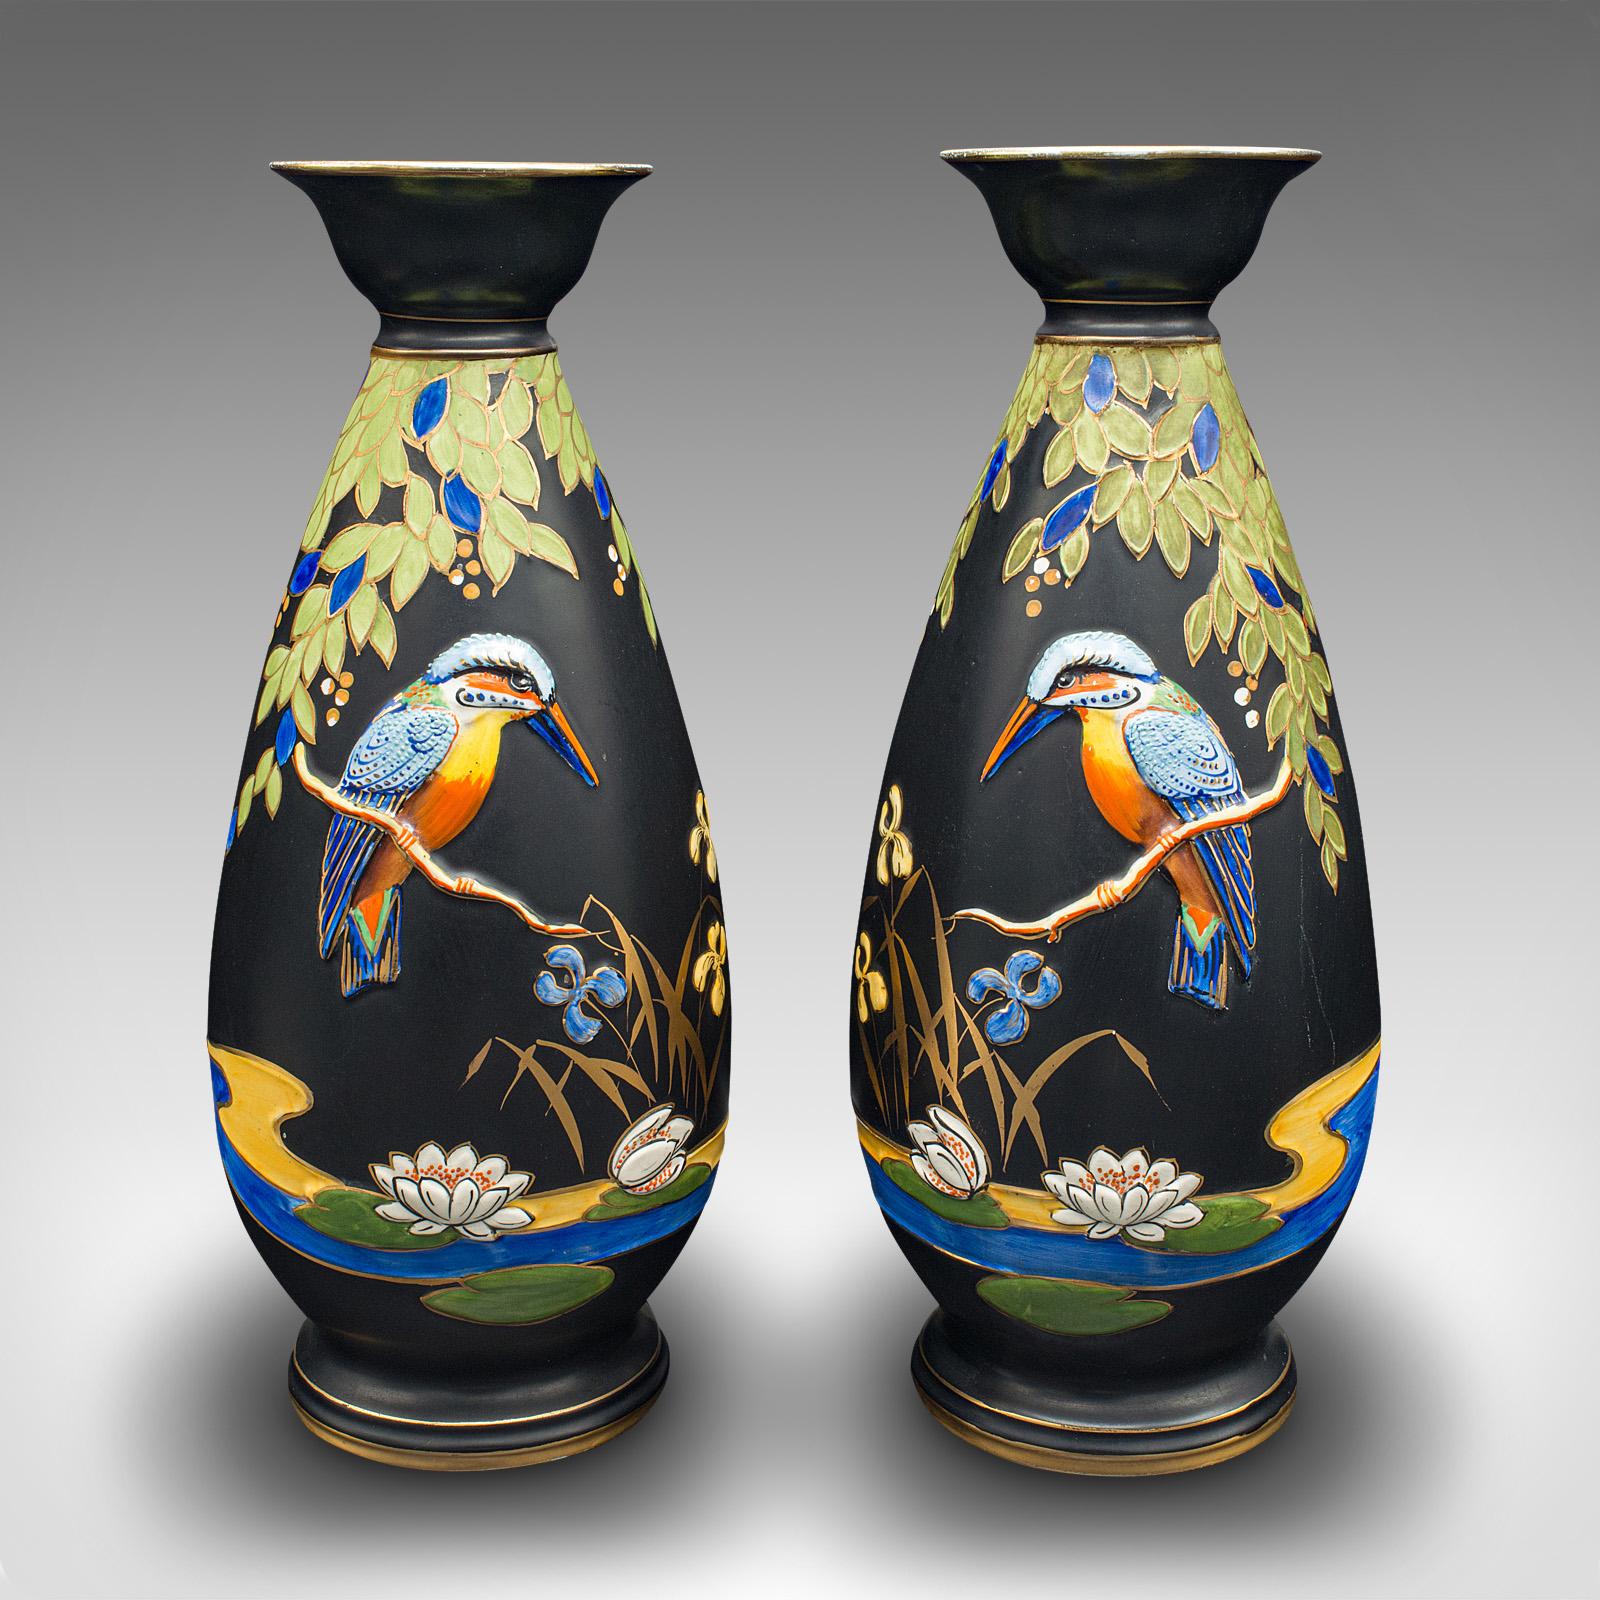 Il s'agit d'une paire de vases d'exposition vintage. Vase anglais satiné à décor de Kingfisher, datant de la période Art déco, vers 1930.

Vases joliment présentés avec des couleurs et des finitions attrayantes
Présente une patine d'usage désirable